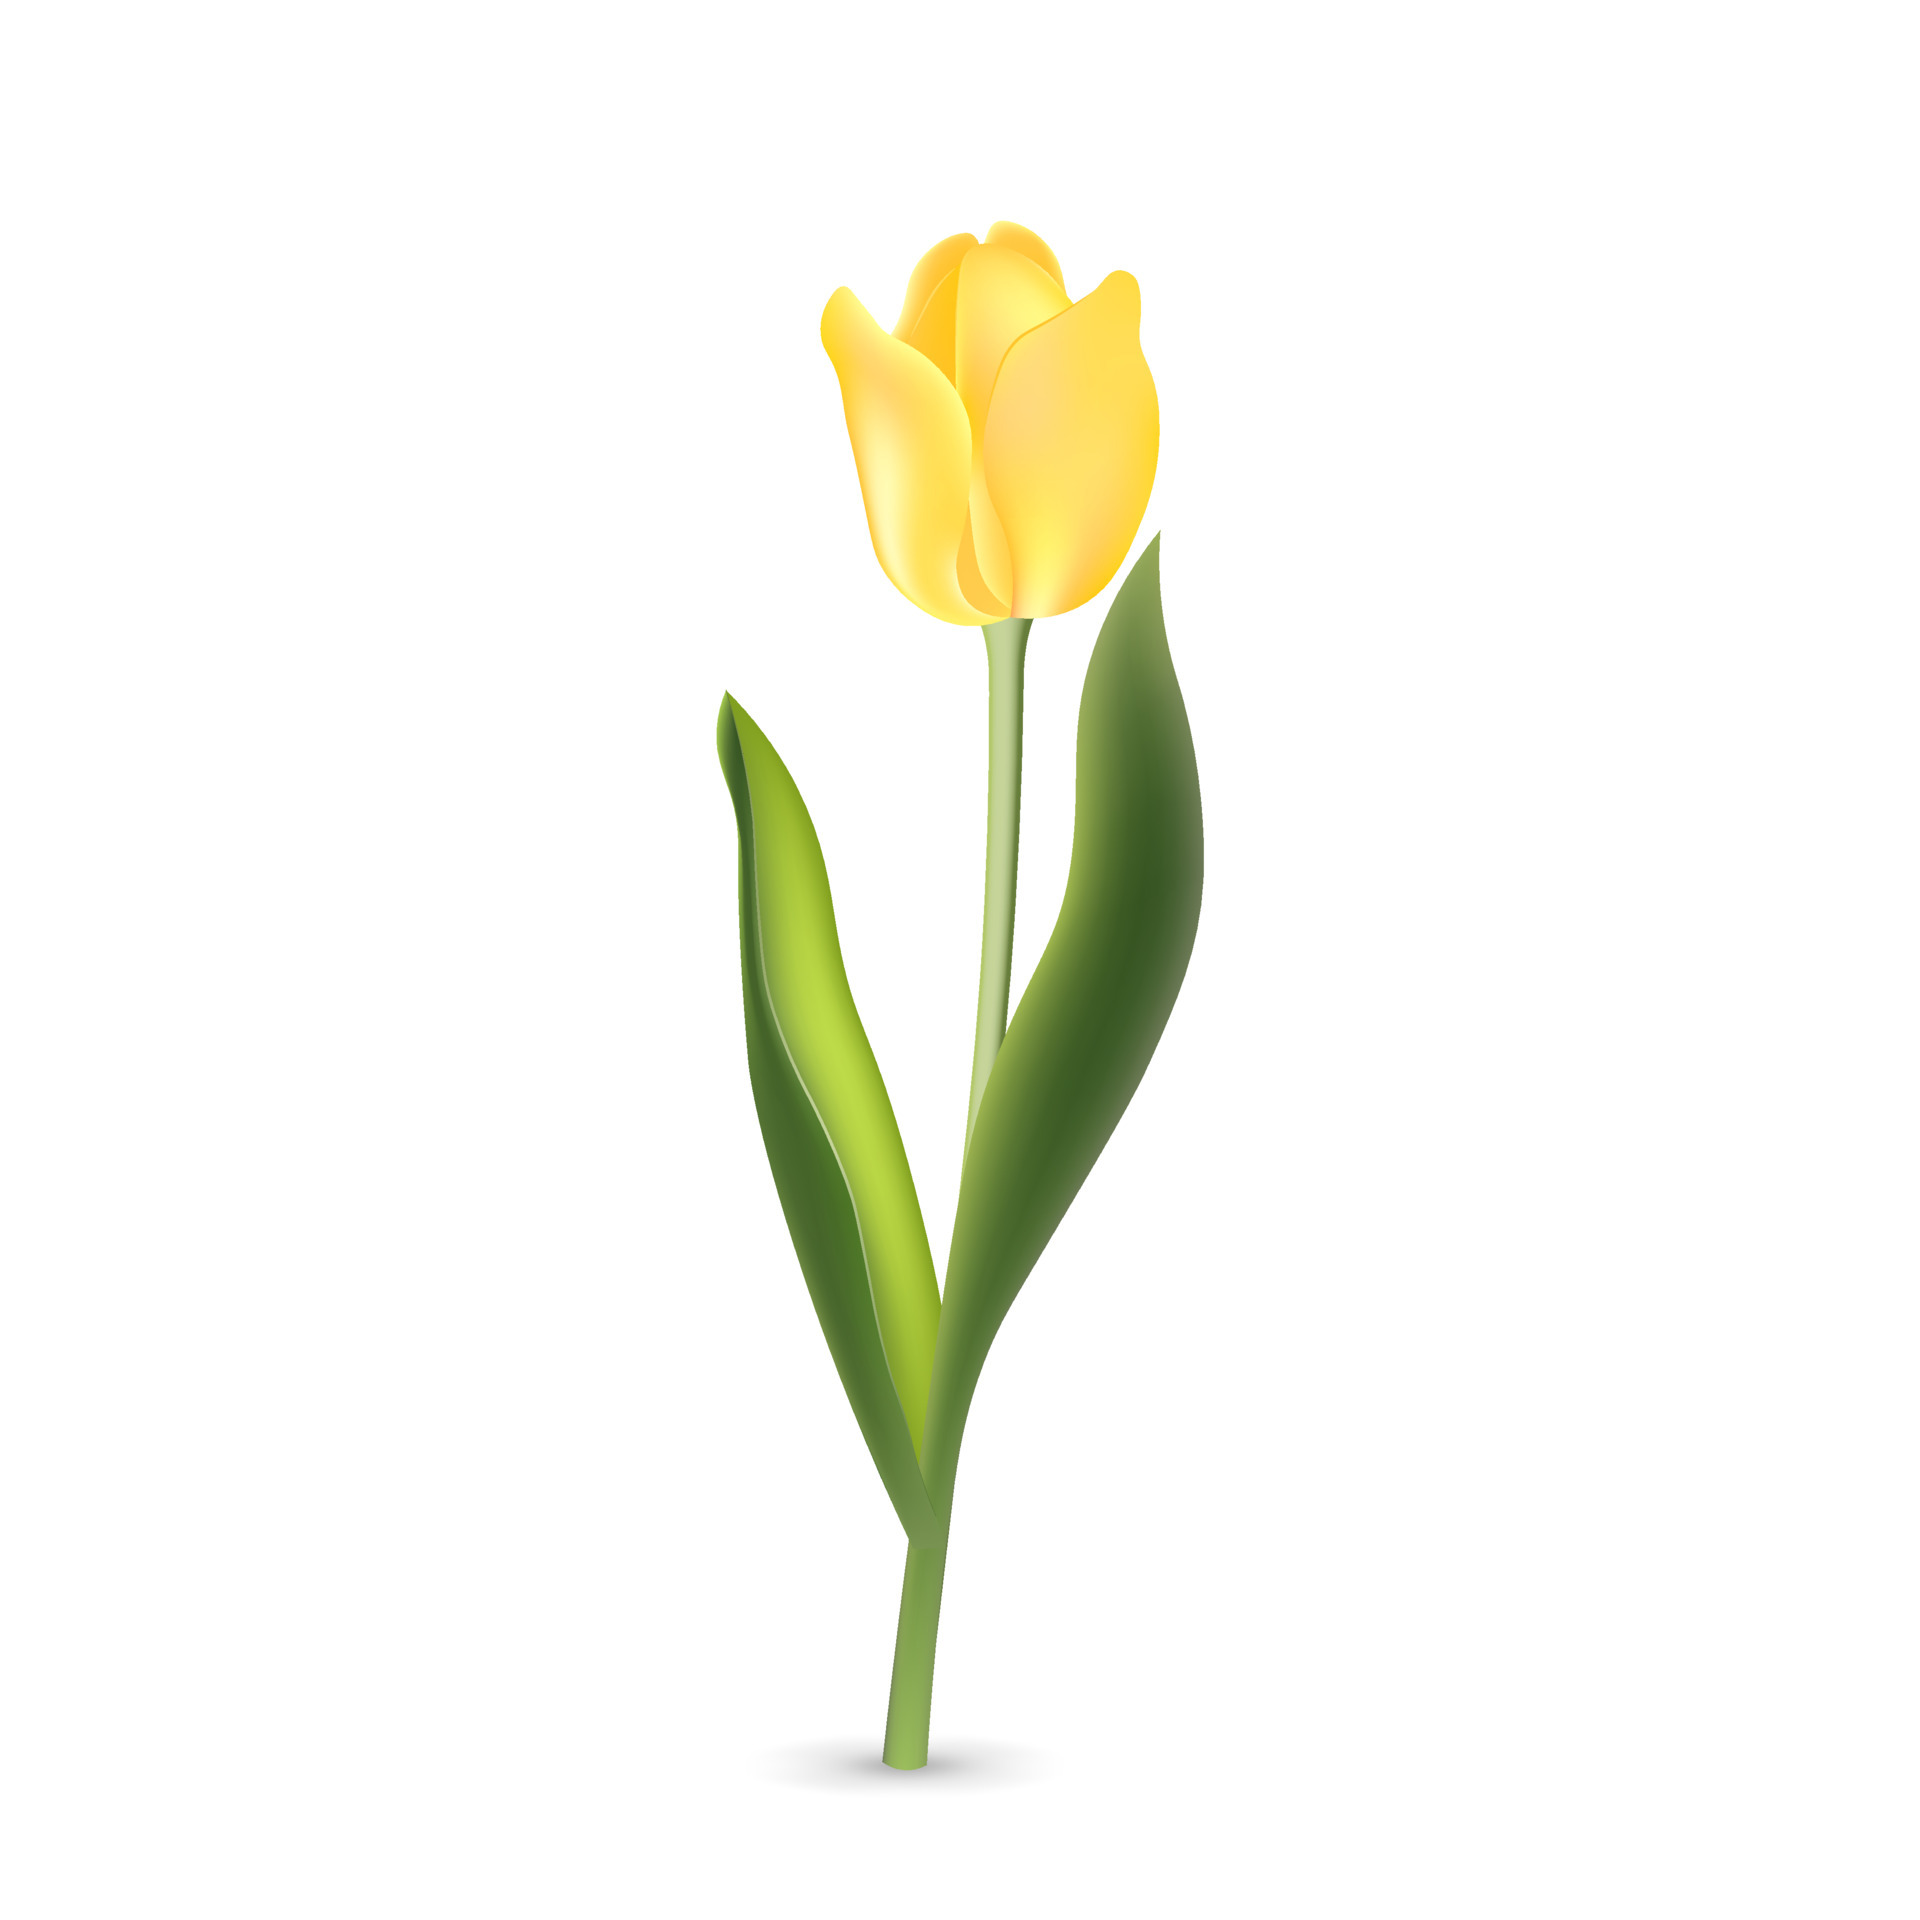 tulipe jaune réaliste avec des feuilles vertes isolées sur fond blanc  6180705 - Telecharger Vectoriel Gratuit, Clipart Graphique, Vecteur Dessins  et Pictogramme Gratuit